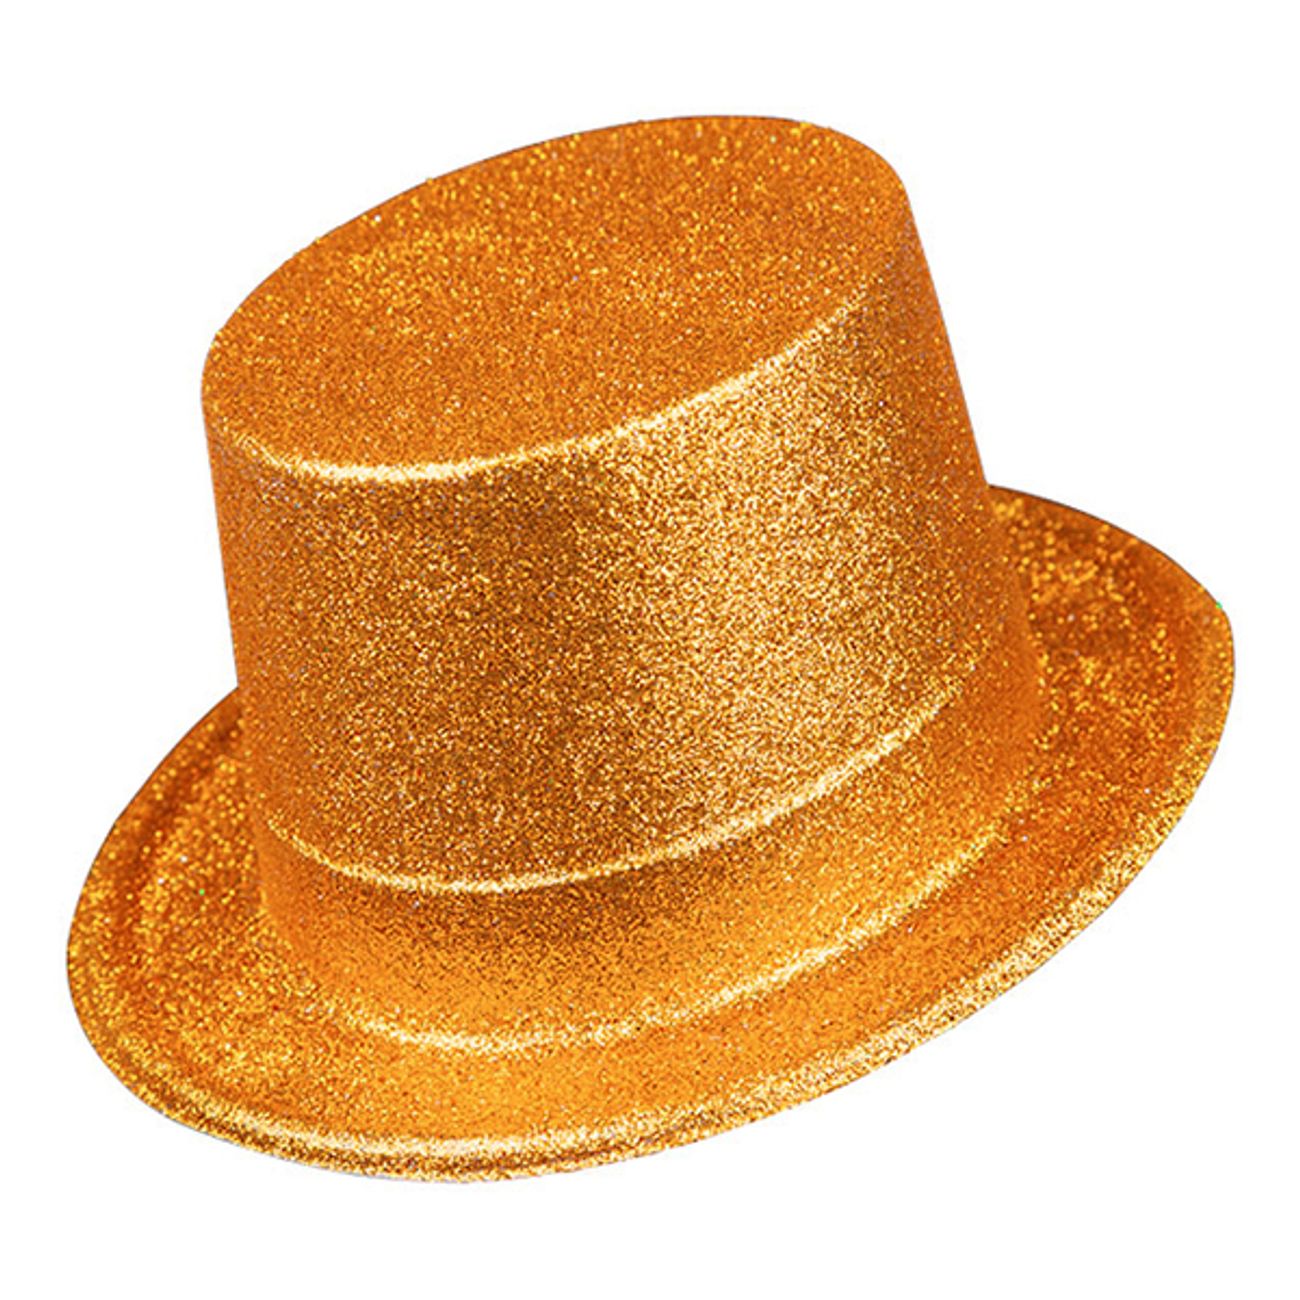 Glitter Høj Hat Guld i | Partykungen